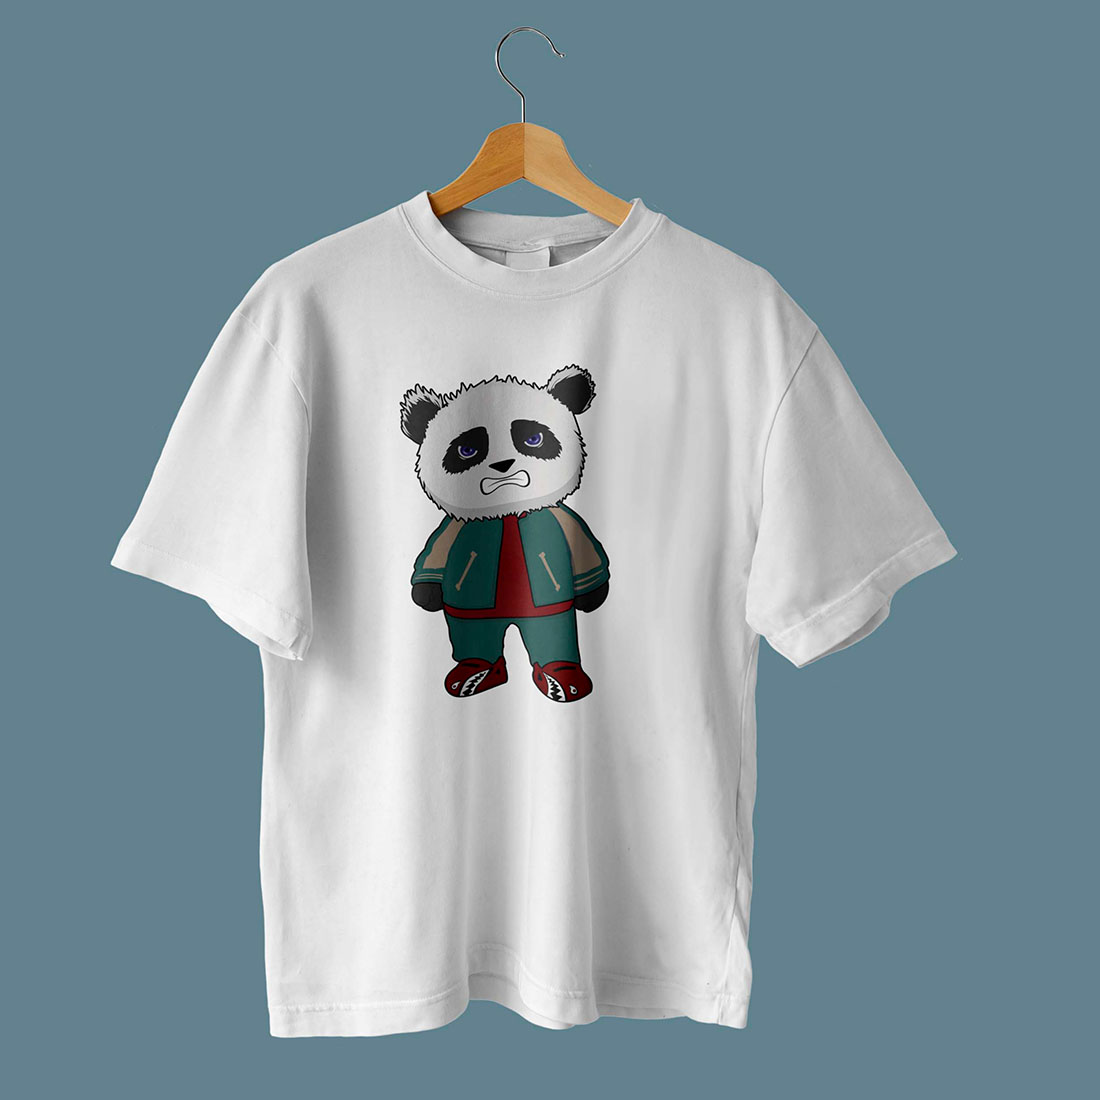 Cool Panda Illustration T-Shirt Design | MasterBundles